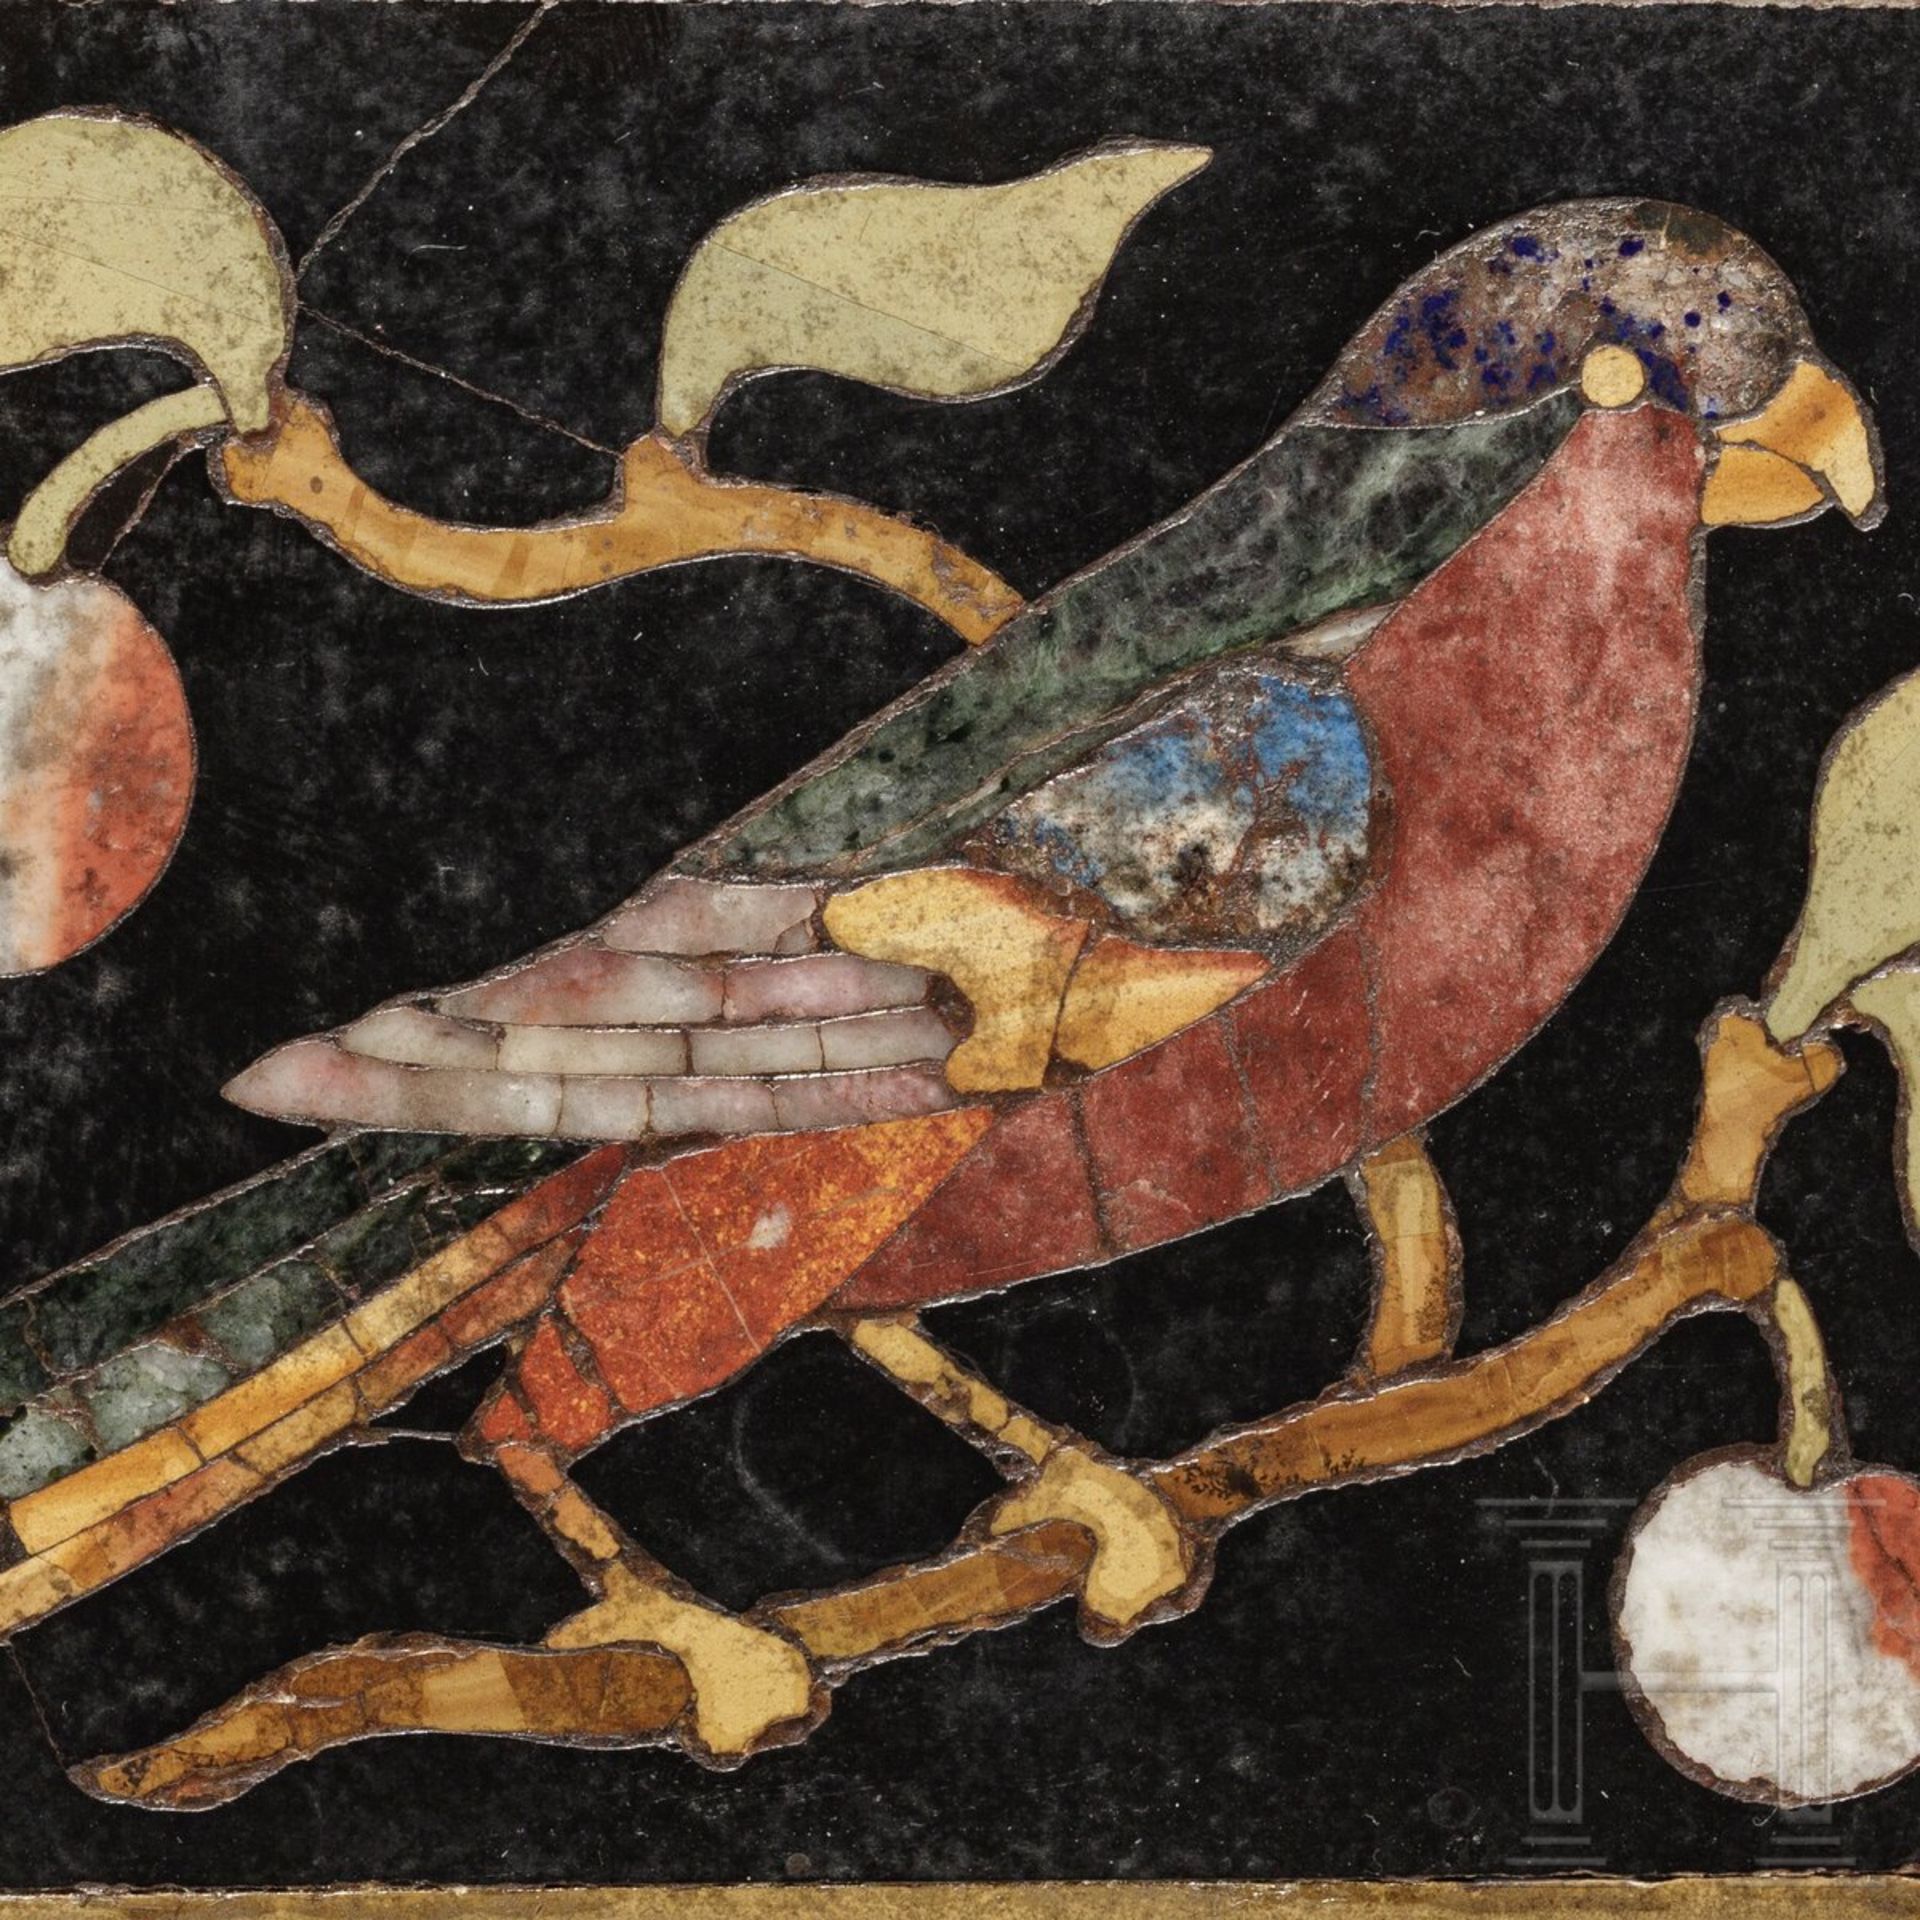 Pietra-Dura-Platte mit Vogeldarstellung, Italien, 17. Jhdt. - Image 3 of 3